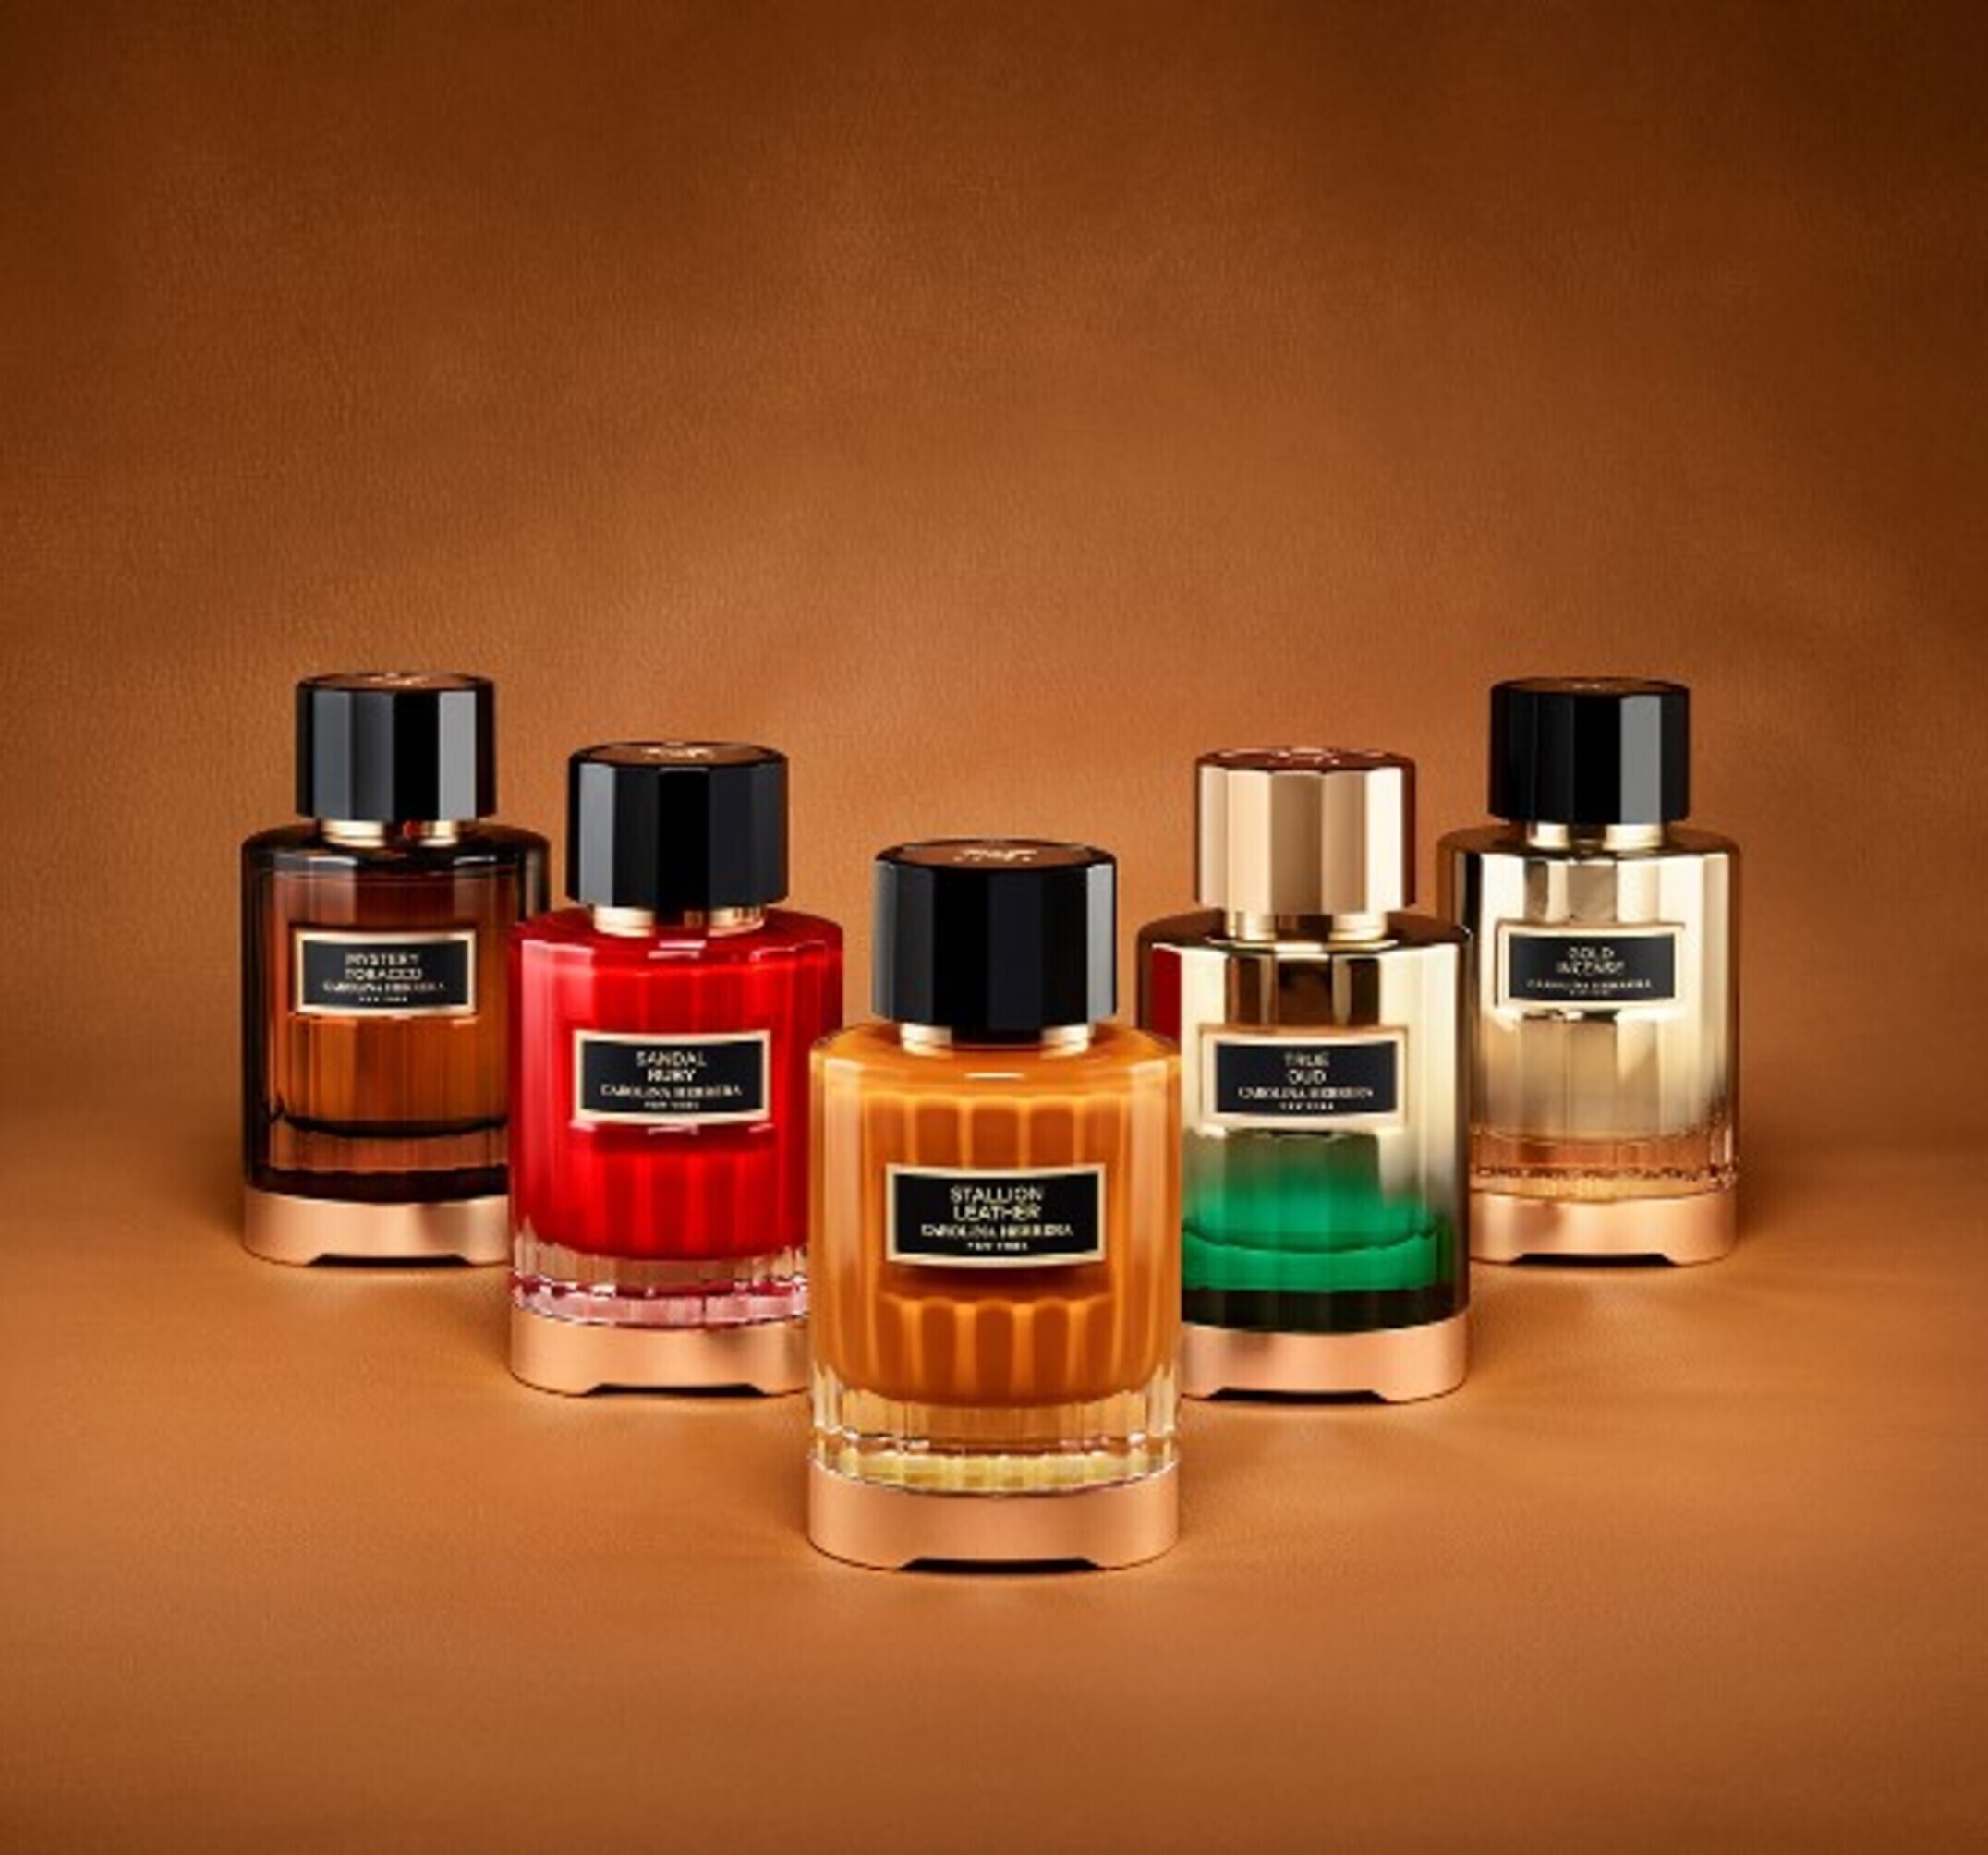 Perfumes de Carolina Herrera del Grupo Puig.